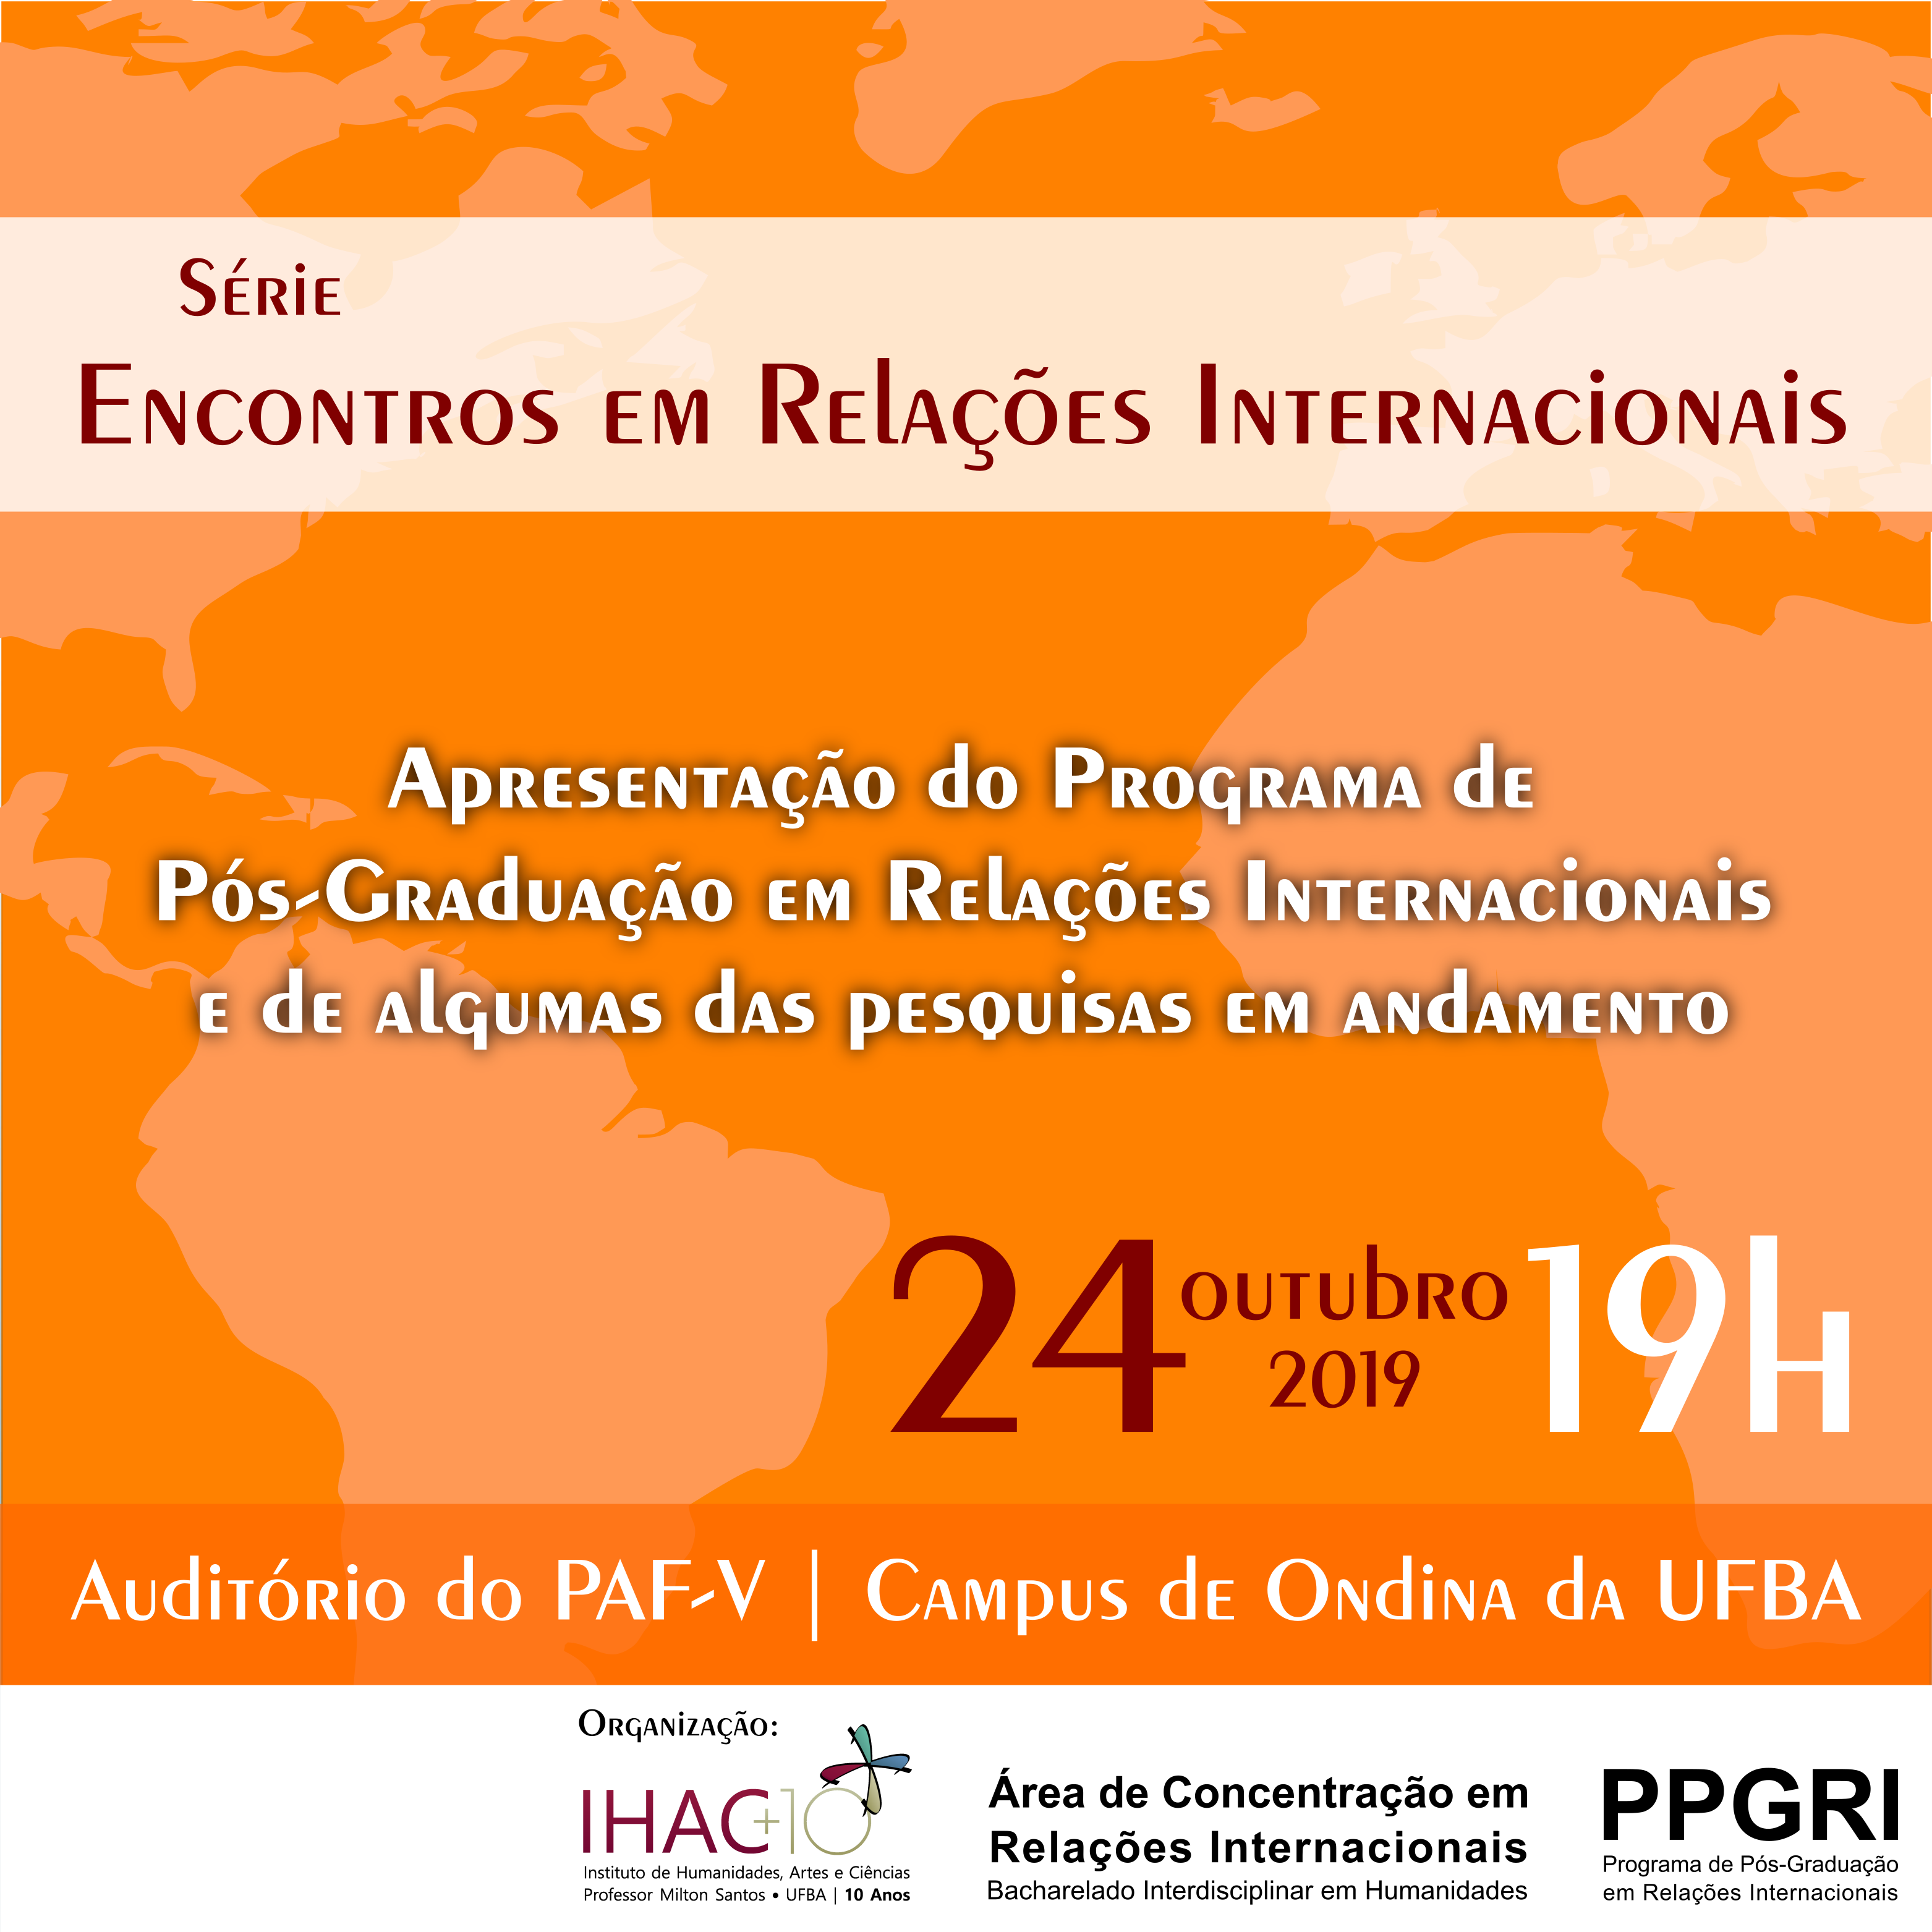 Próxima edição dos “Encontros em Relações Internacionais” apresenta o PPGRI e pesquisas em andamento